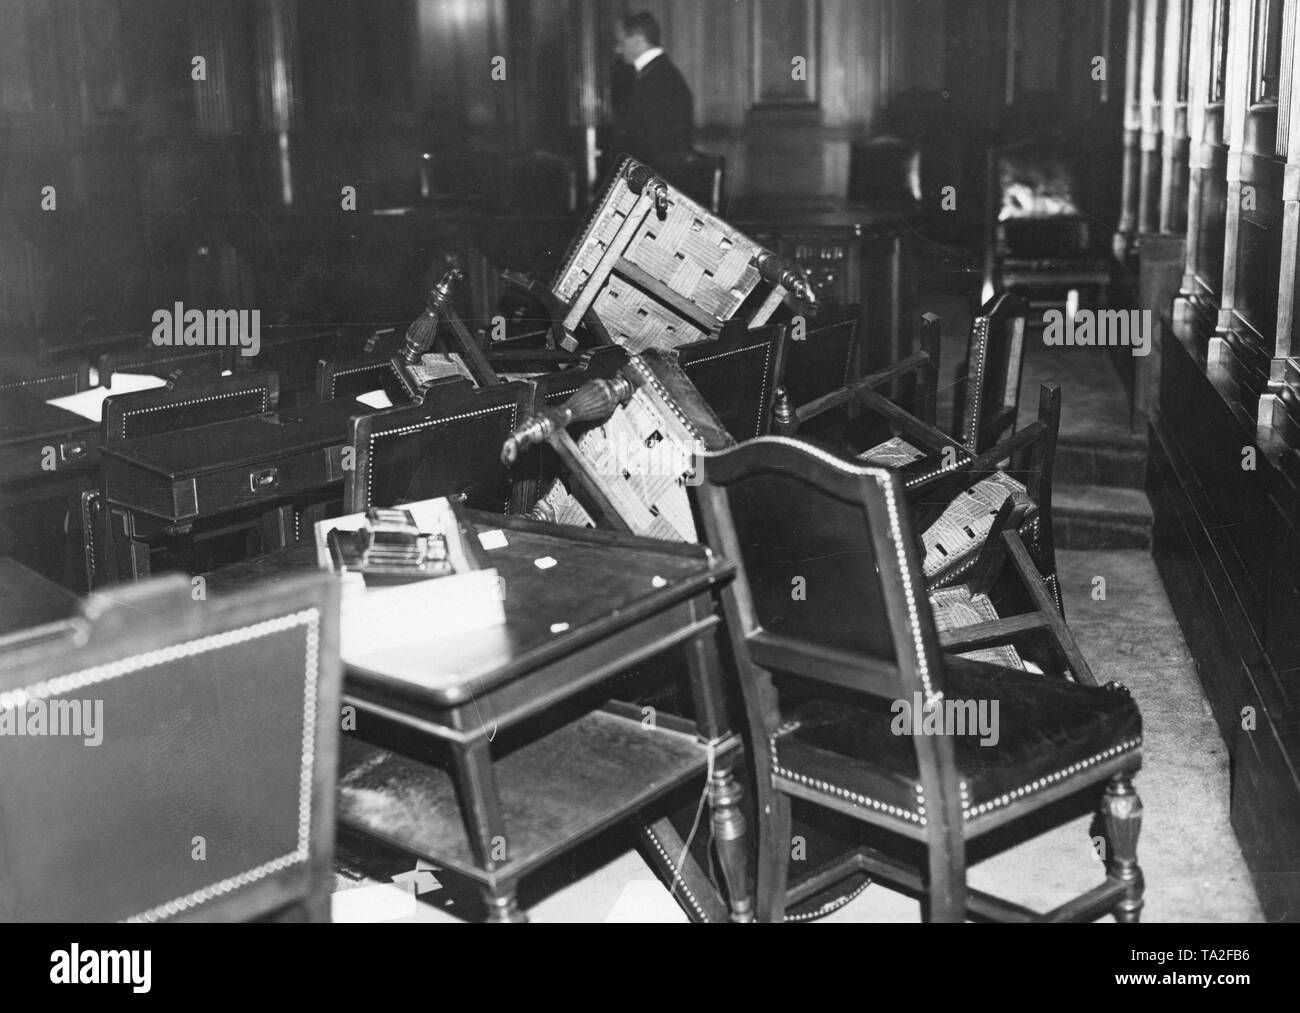 Il 25 maggio 1932, vi è stata una rissa nel Landtag tra comunisti e socialisti nazionali, diversi membri del Parlamento europeo sono stati feriti e parti di mobili è stata danneggiata. Qui sedie rotte nella sala plenaria. Foto Stock